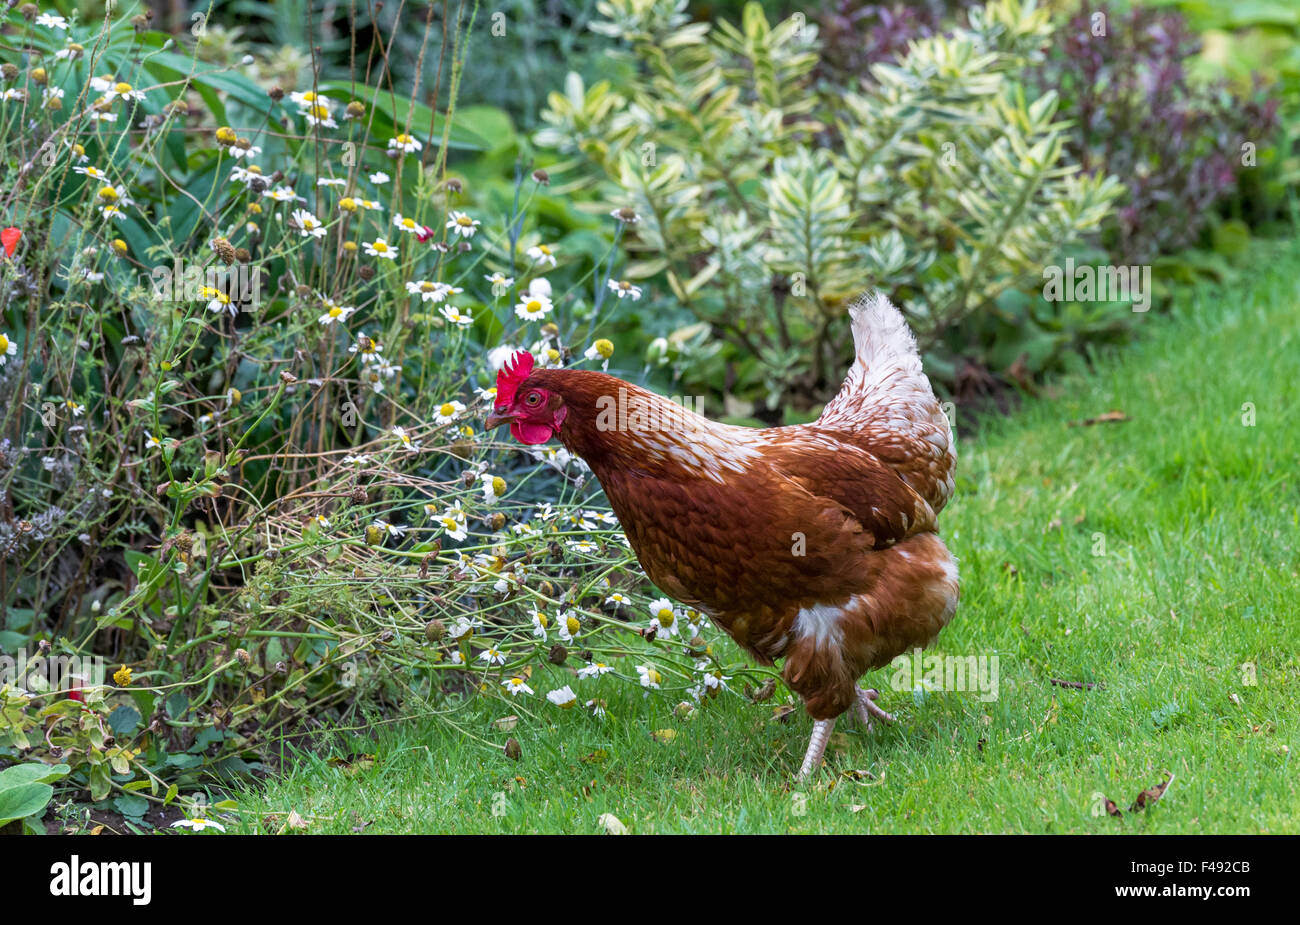 Gran rango libre gallina en busca de alimentos en un jardín interno en Inglaterra Foto de stock